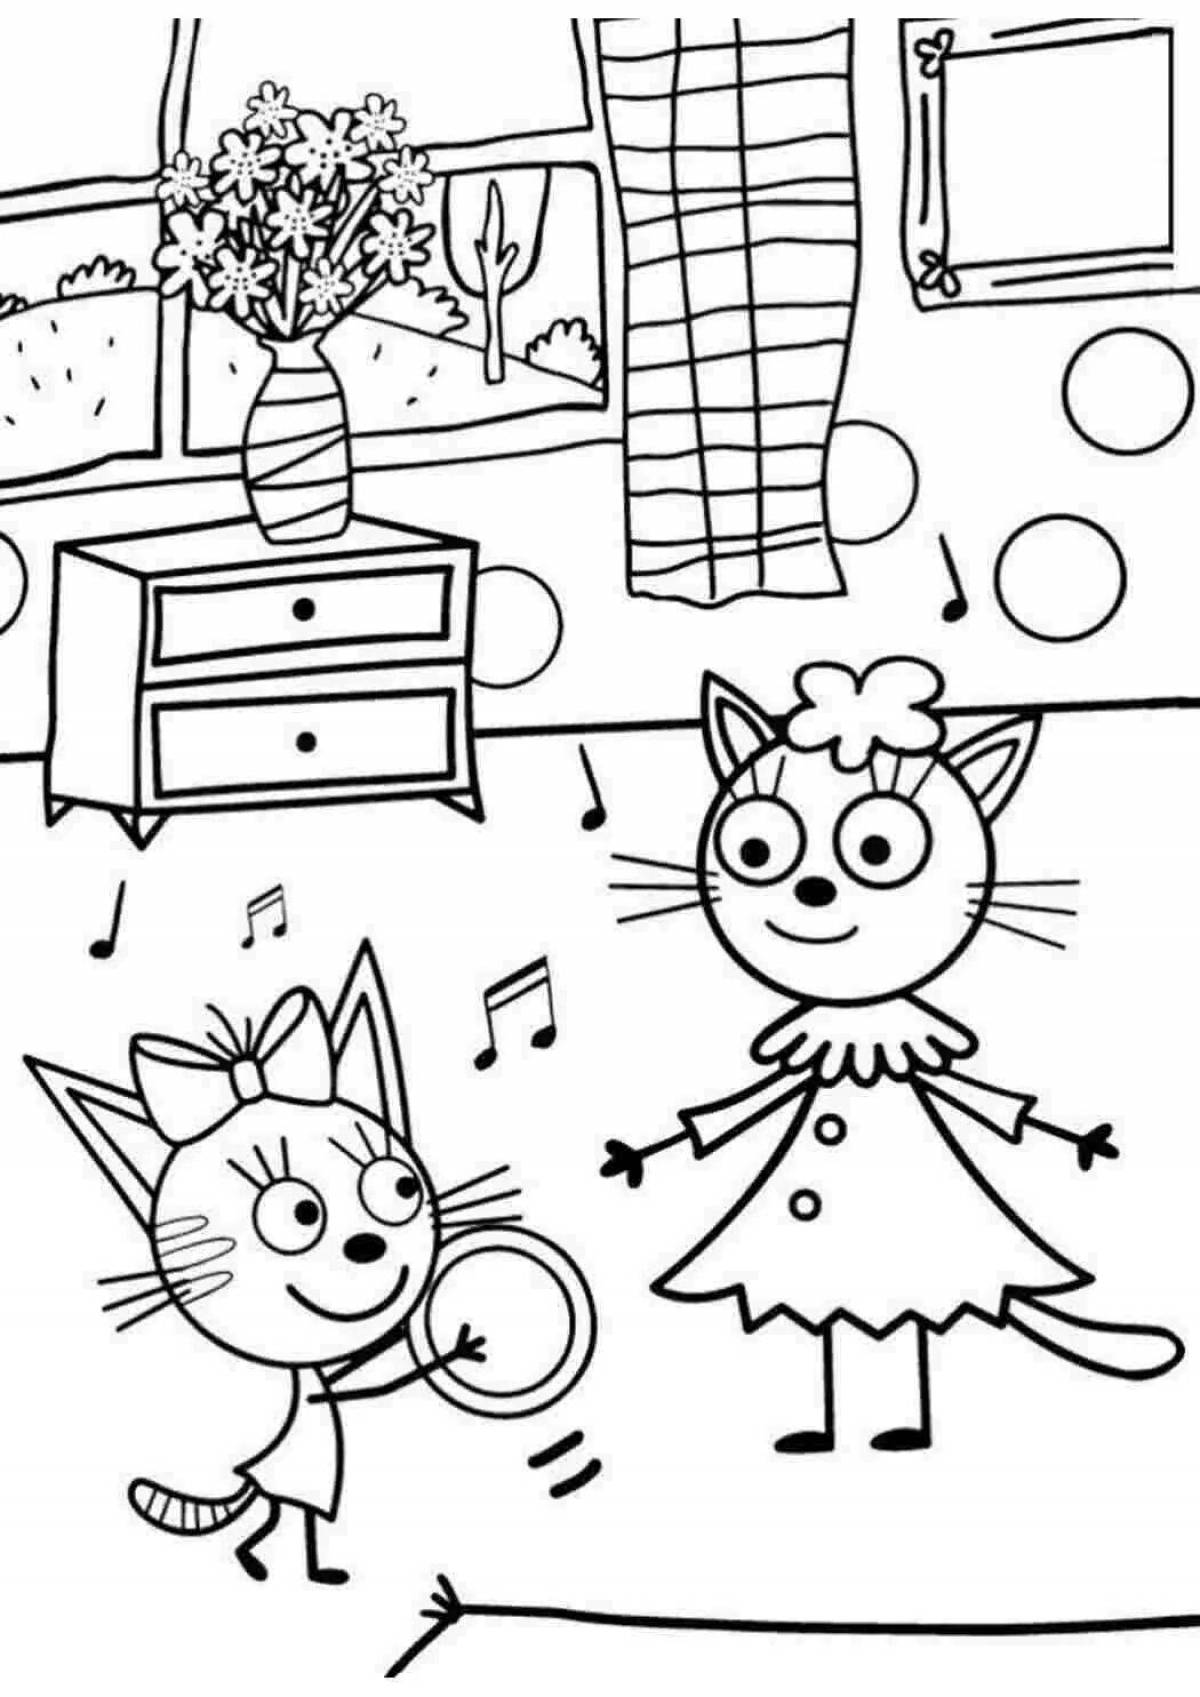 Анимированная страница просмотра трех кошек